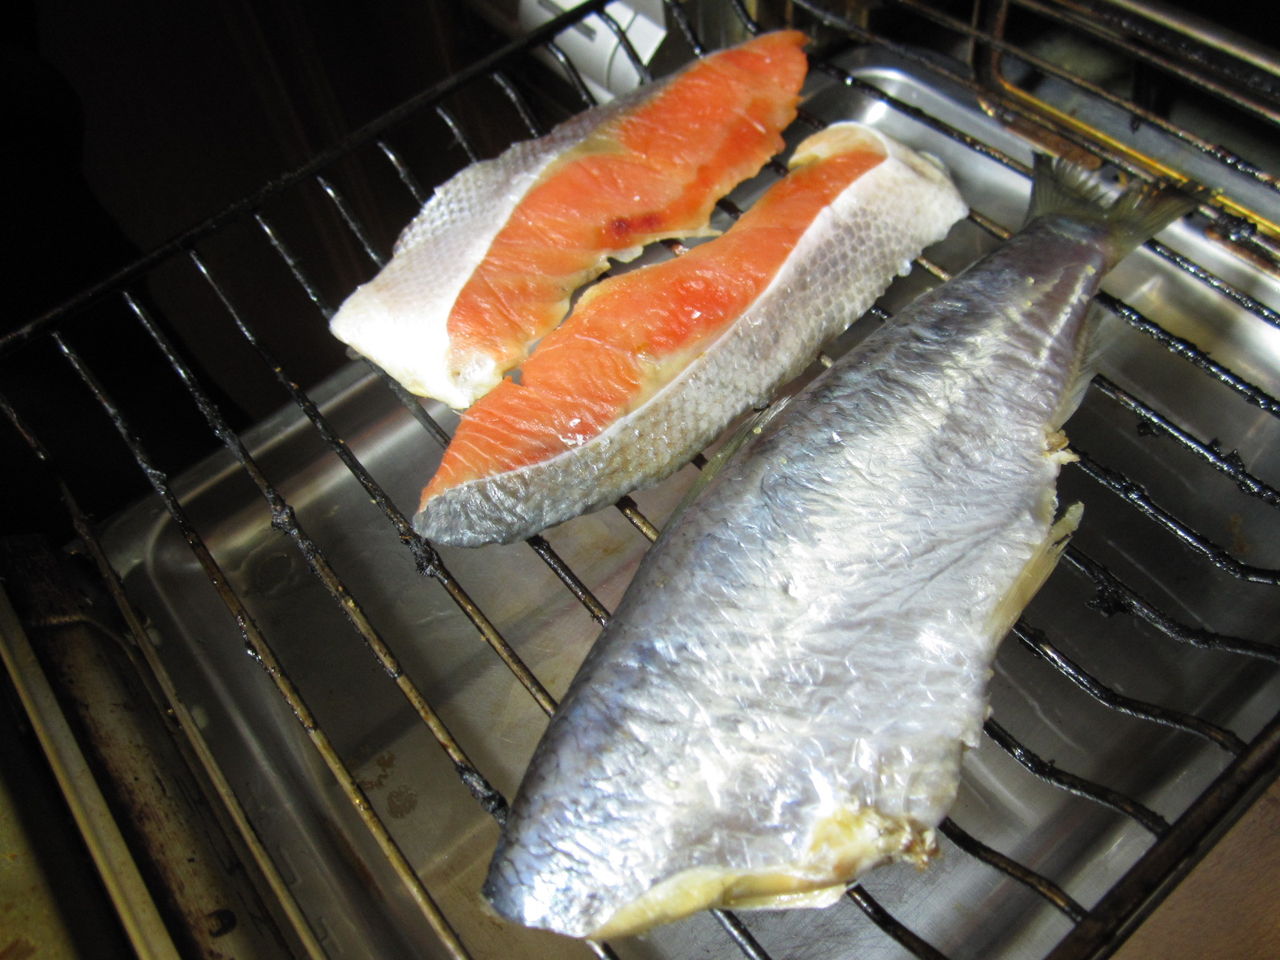 冷蔵庫で生魚の干物を作りましたよ ニシンと鮭の切り身で 節約ライフを楽しまなきゃ